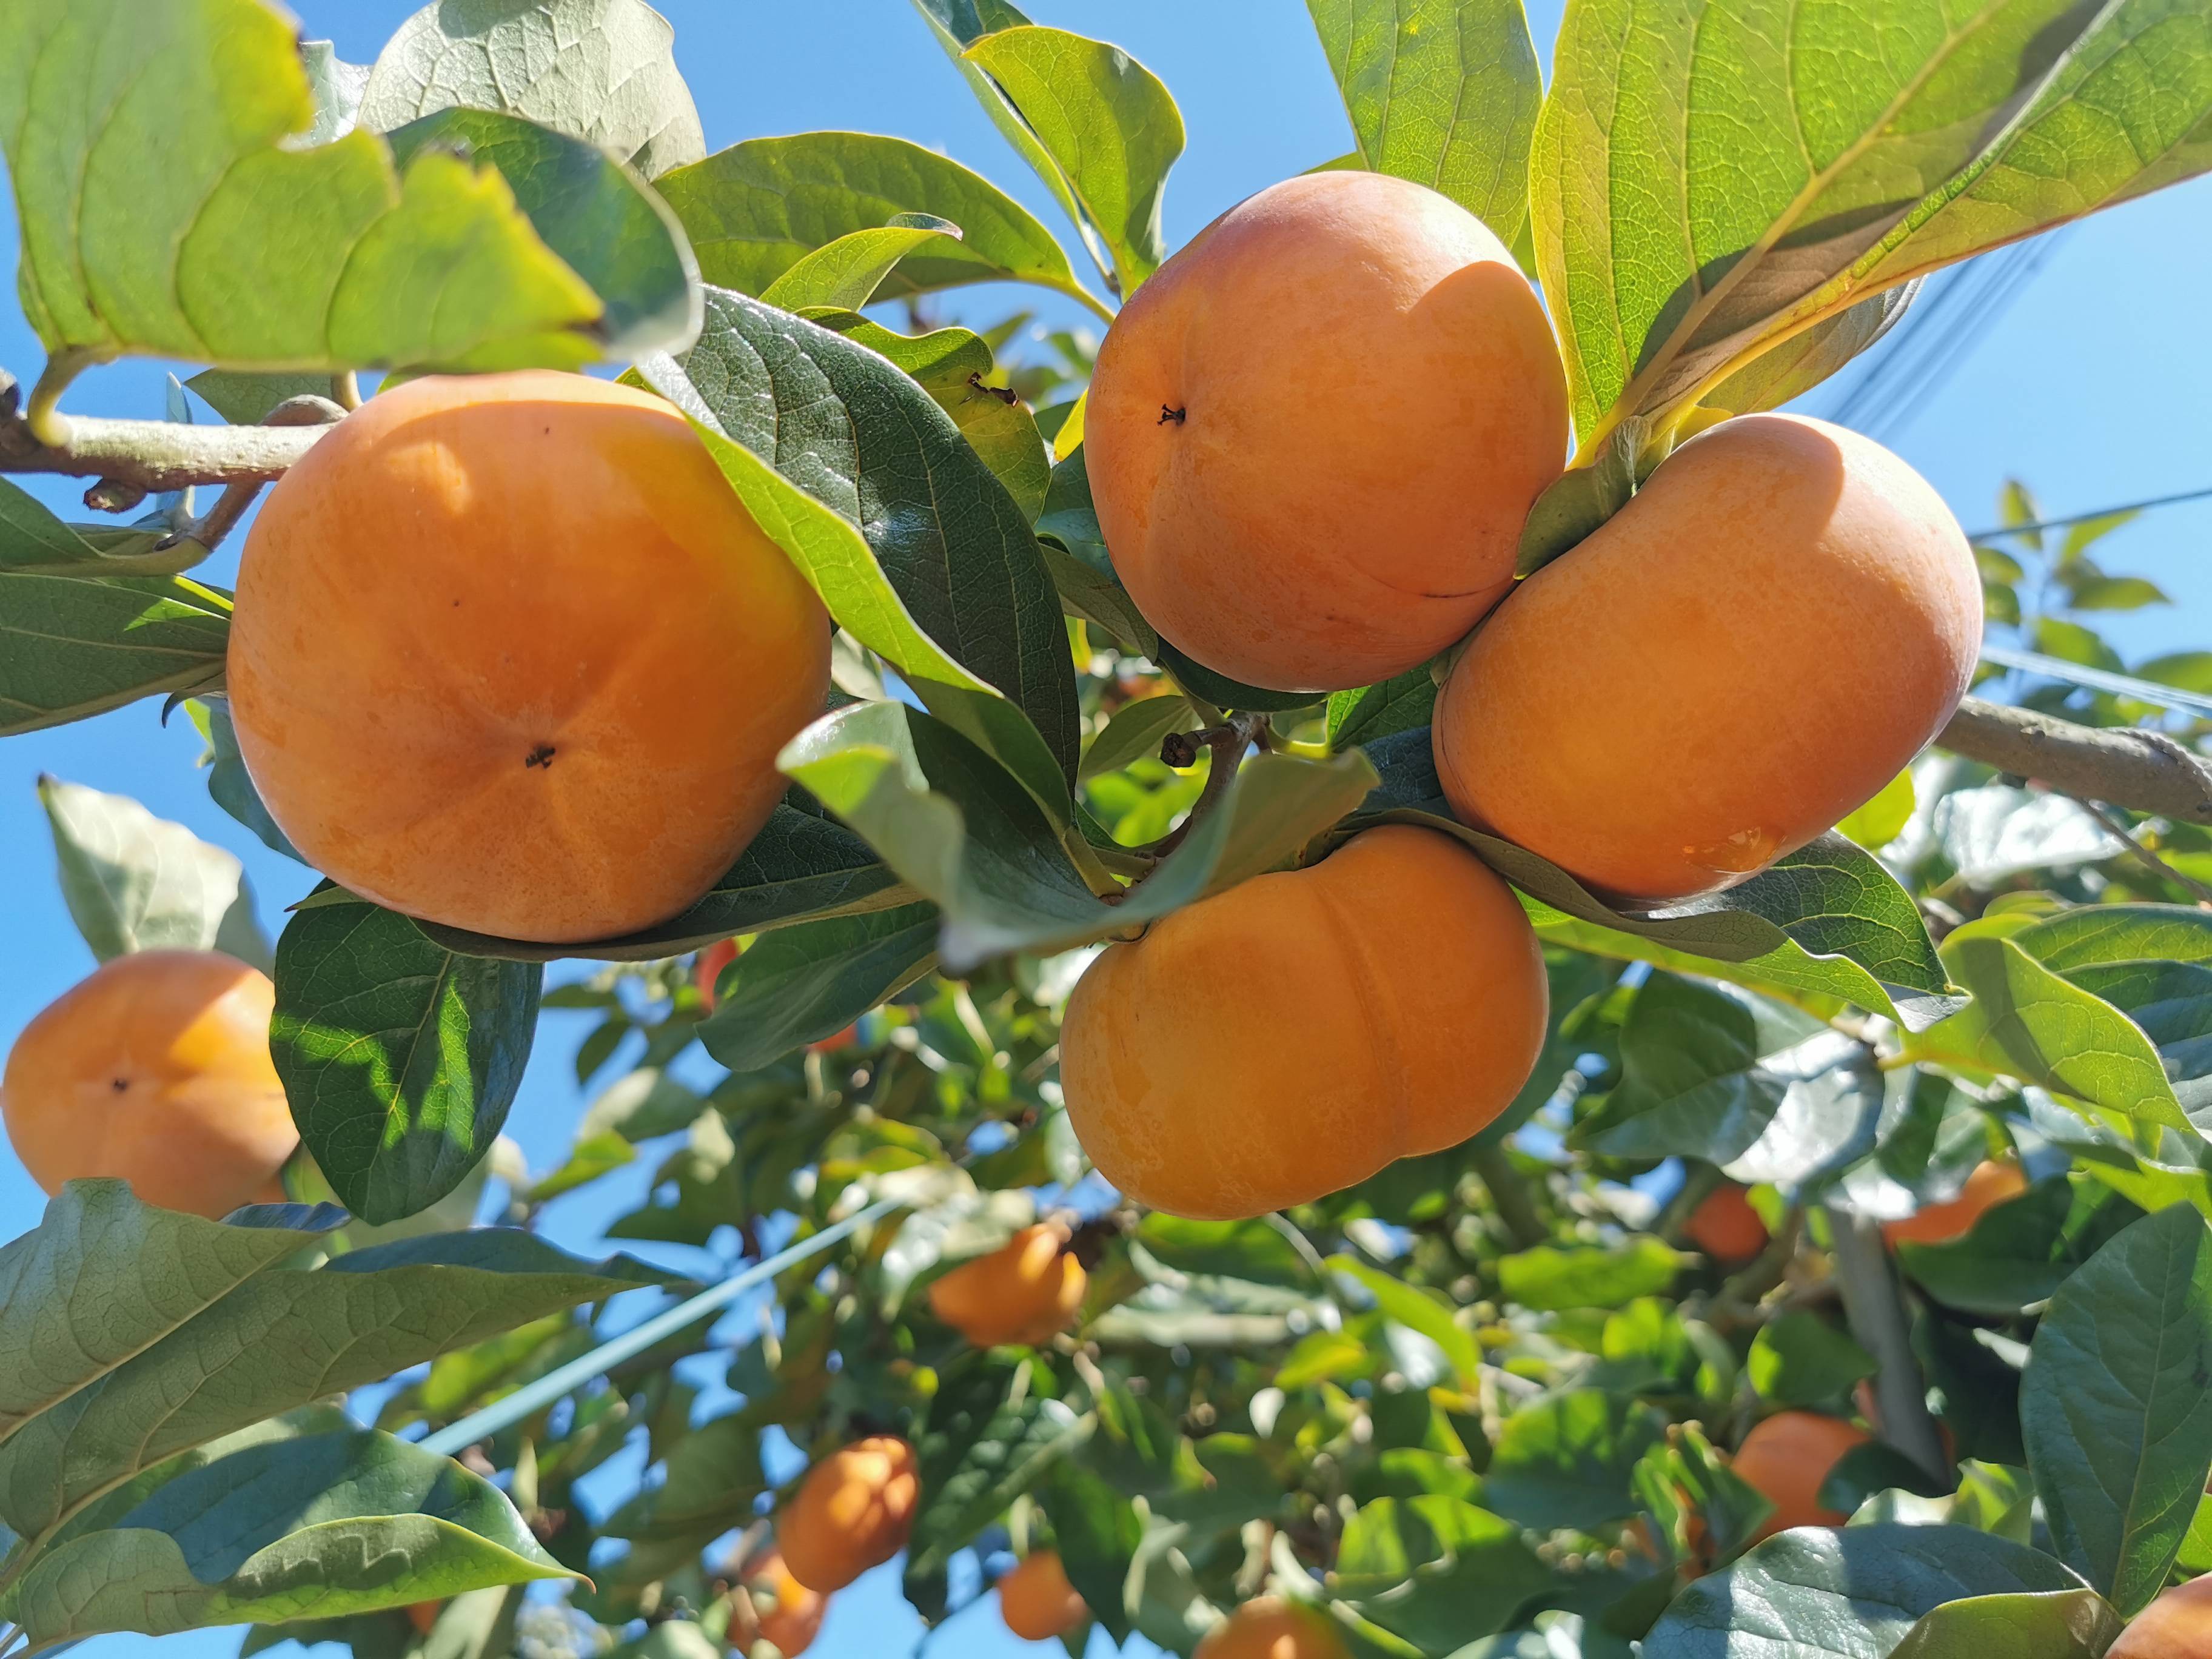 11月,在云南省保山市隆阳区板桥镇孟官社区,成片的柿子林里橙黄色的